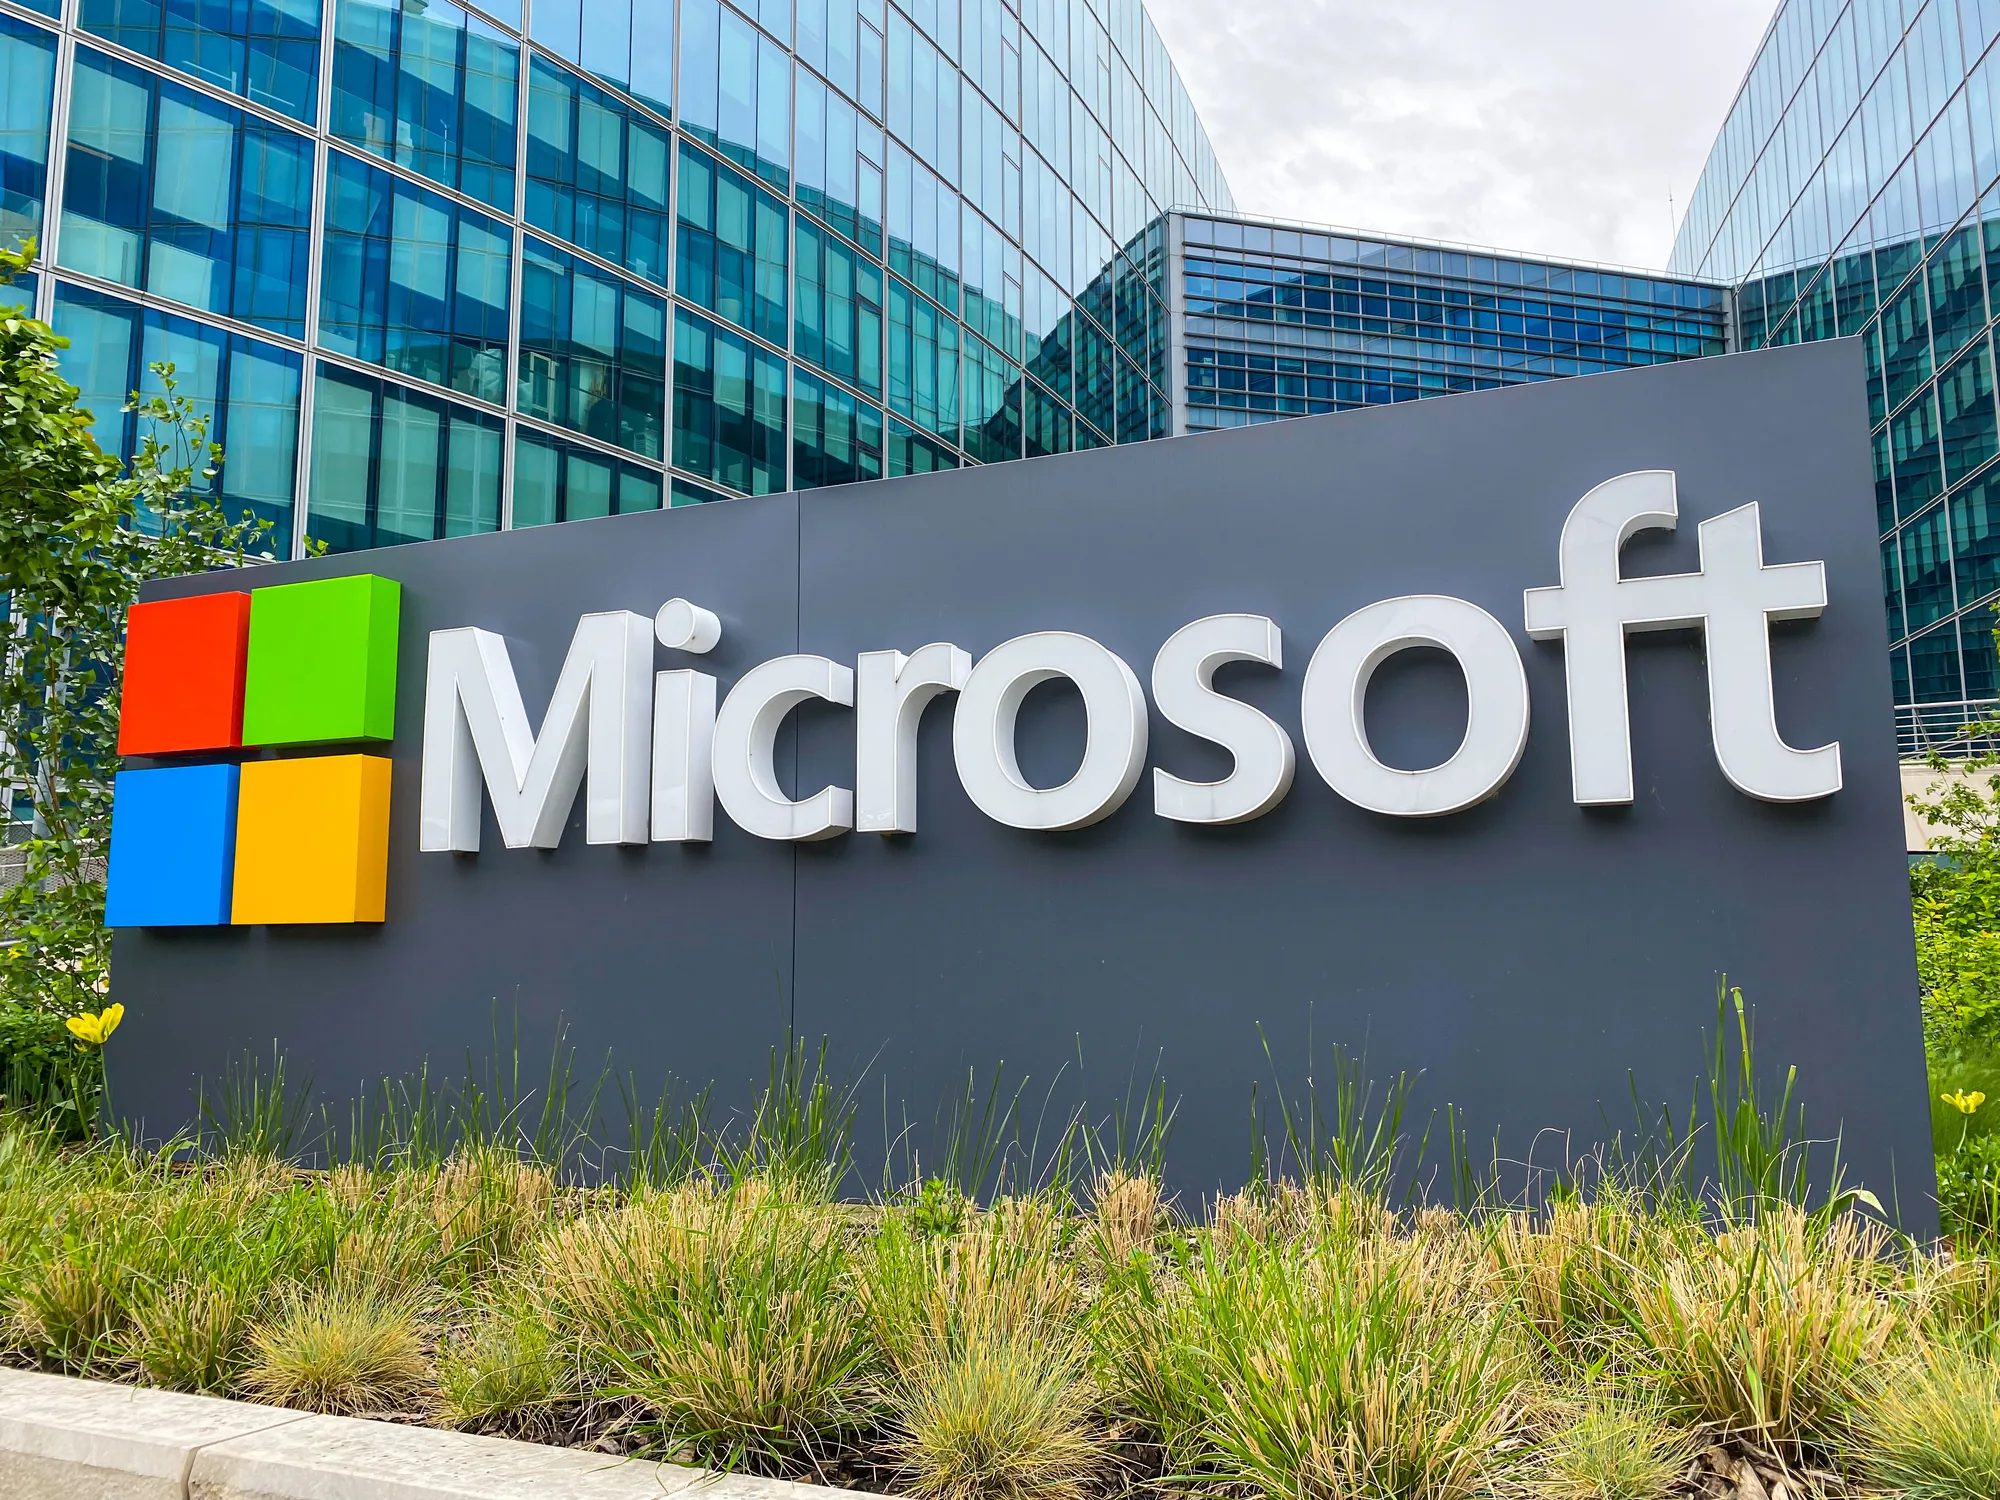 Microsoft bỏ 76 triệu USD mua lại đồn điền bí ngô, dự kiến lấy đất xây trung tâm dữ liệu